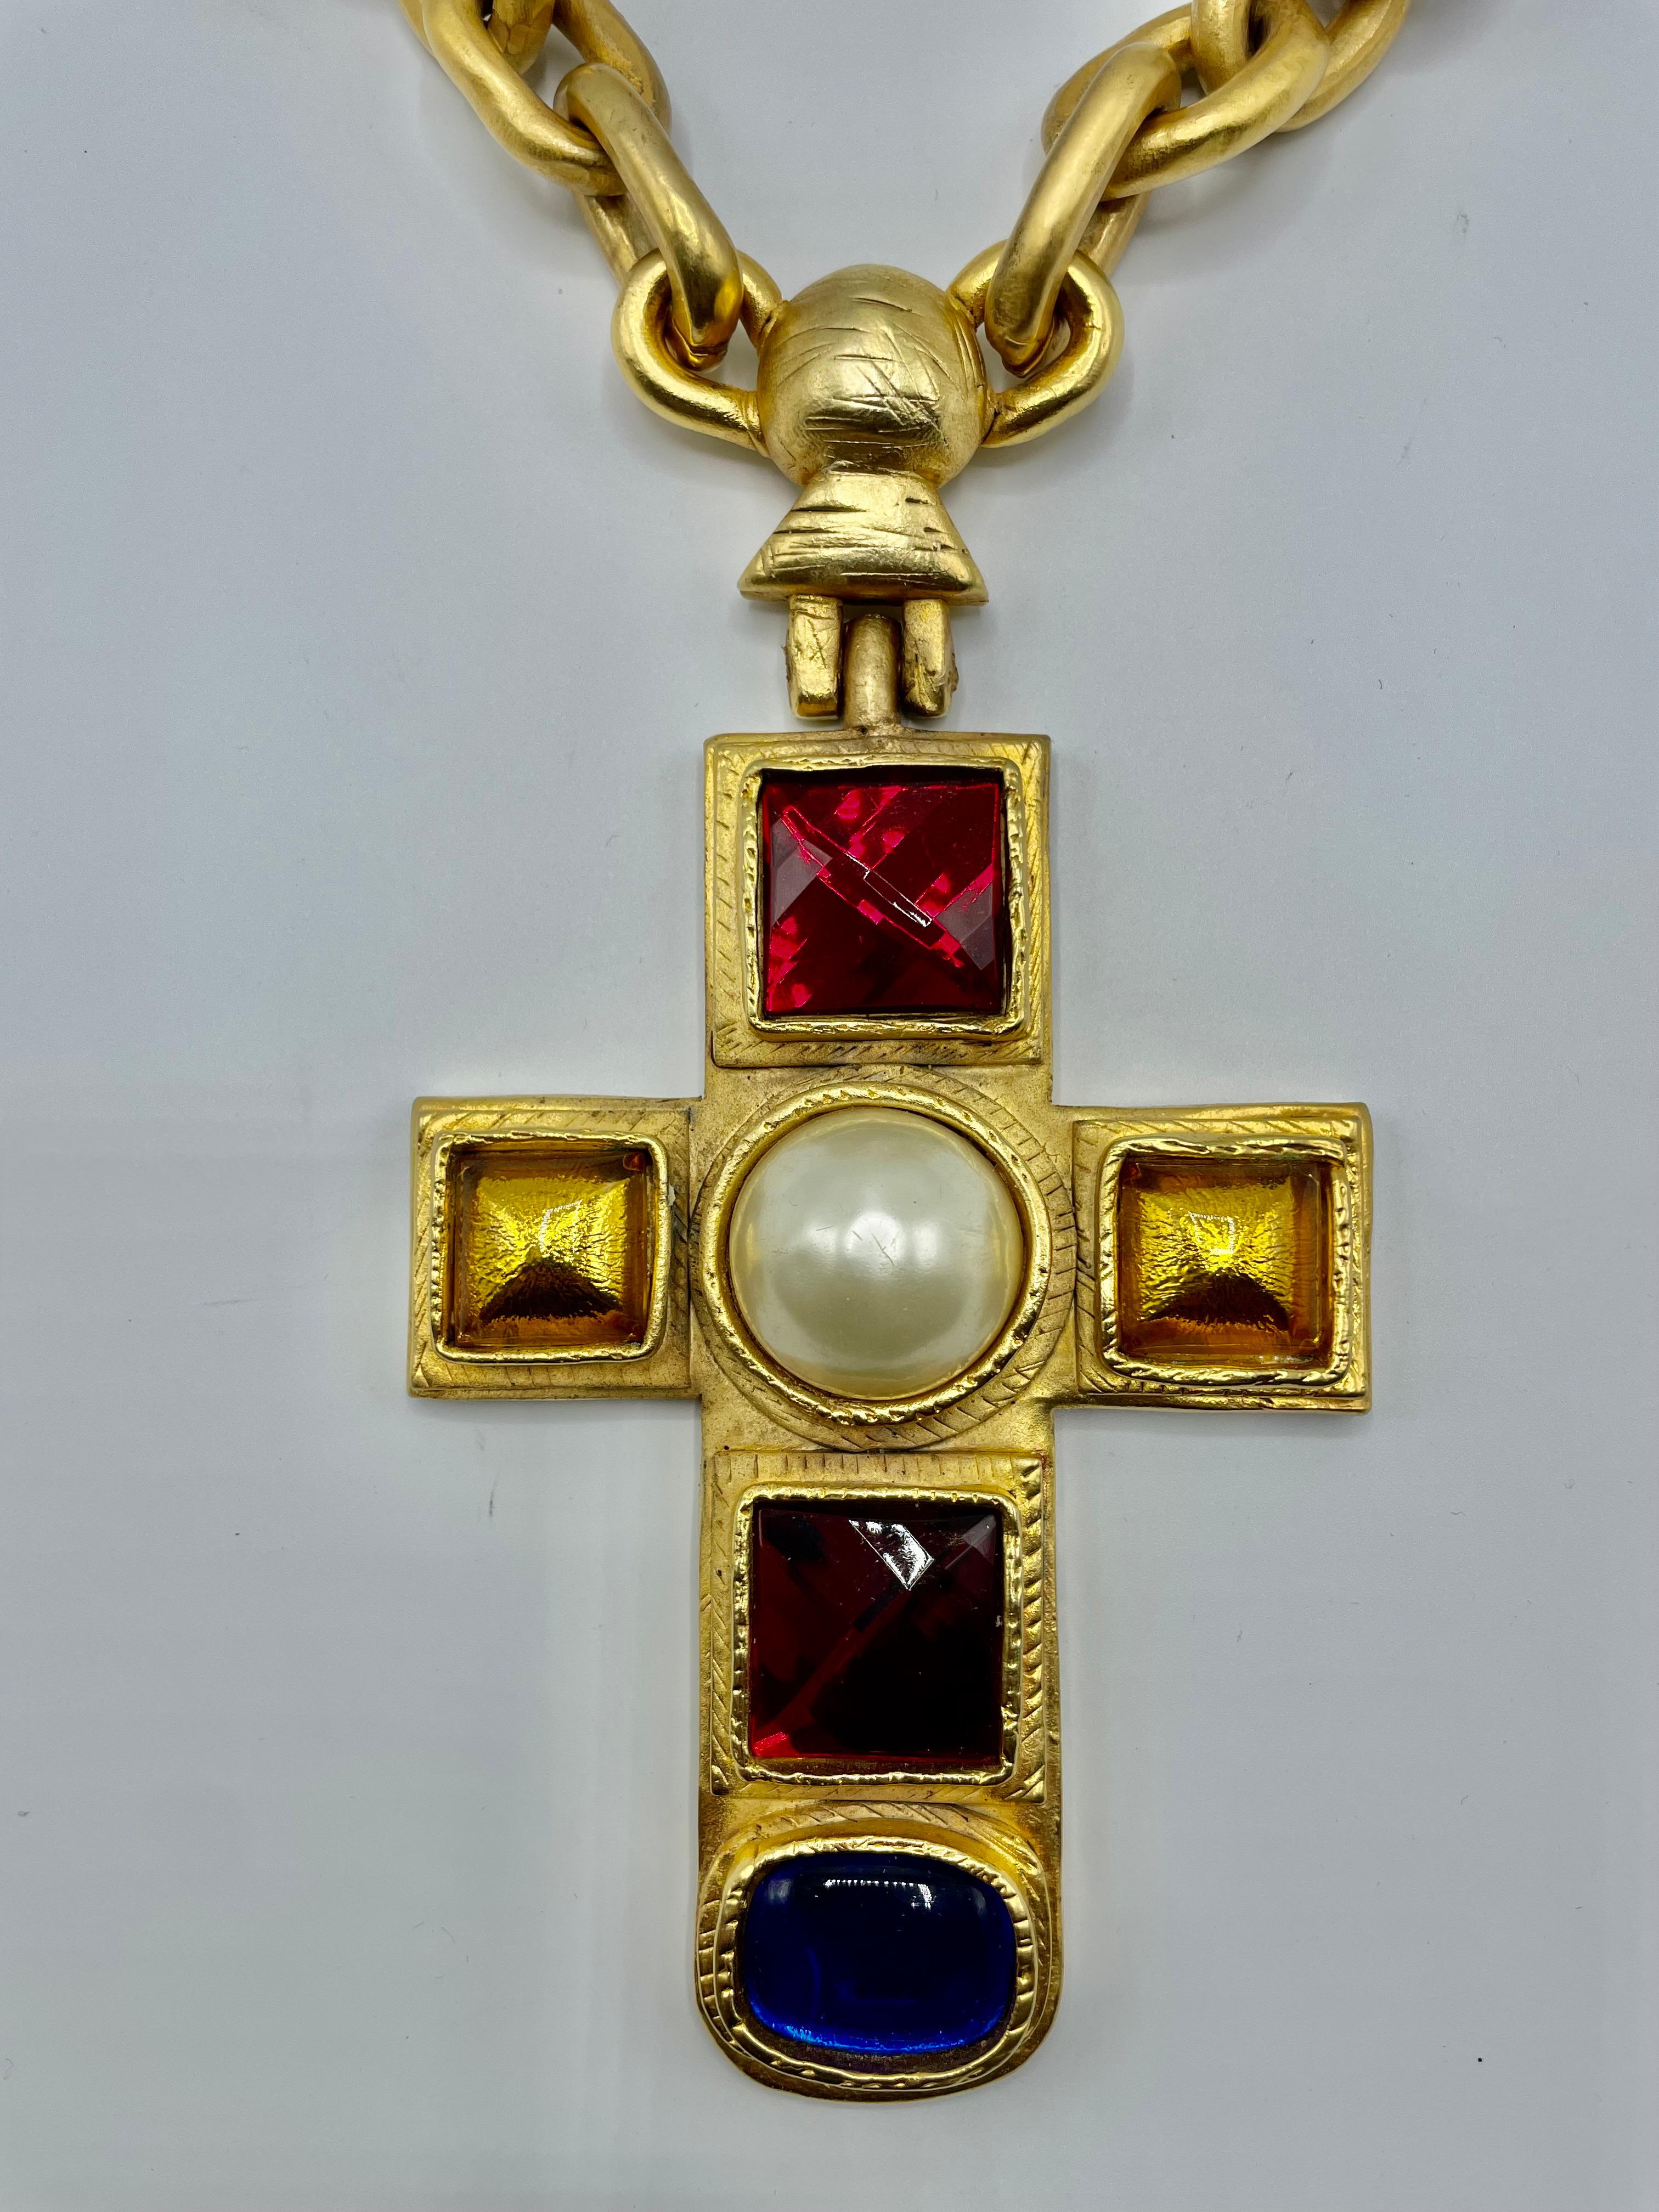 Croix et collier massifs conçus par Victoire de Castellane, uniques et spectaculaires. Un objet de collection incontournable.